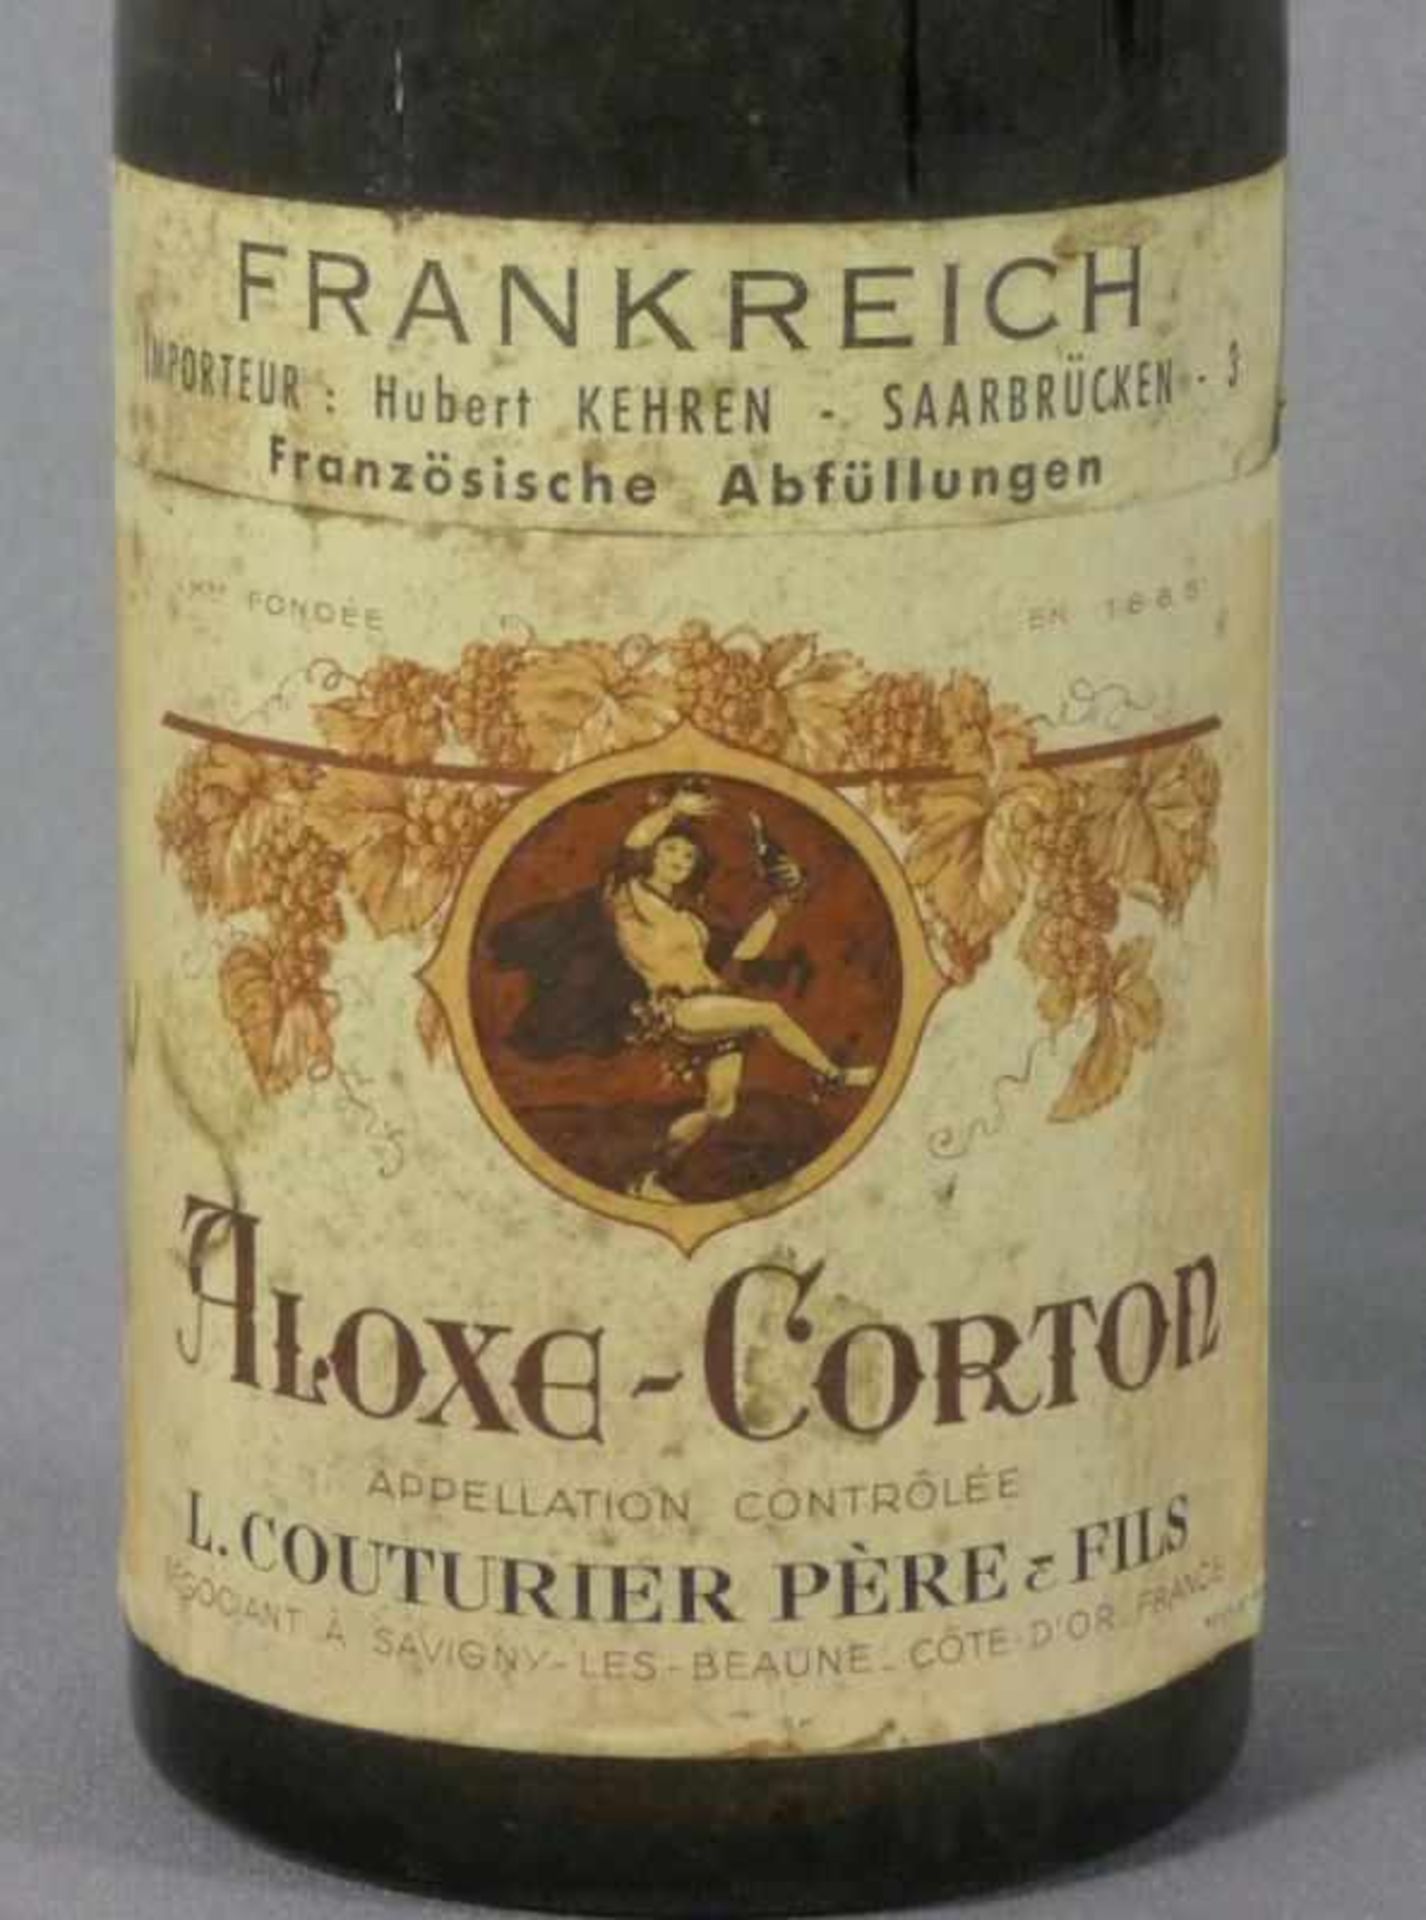 L. Couturier Père & FilsBurgundEine Flasche Aloxe-Corton von 1959, rote Kapsel. - Stark verschmutzt, - Bild 2 aus 2